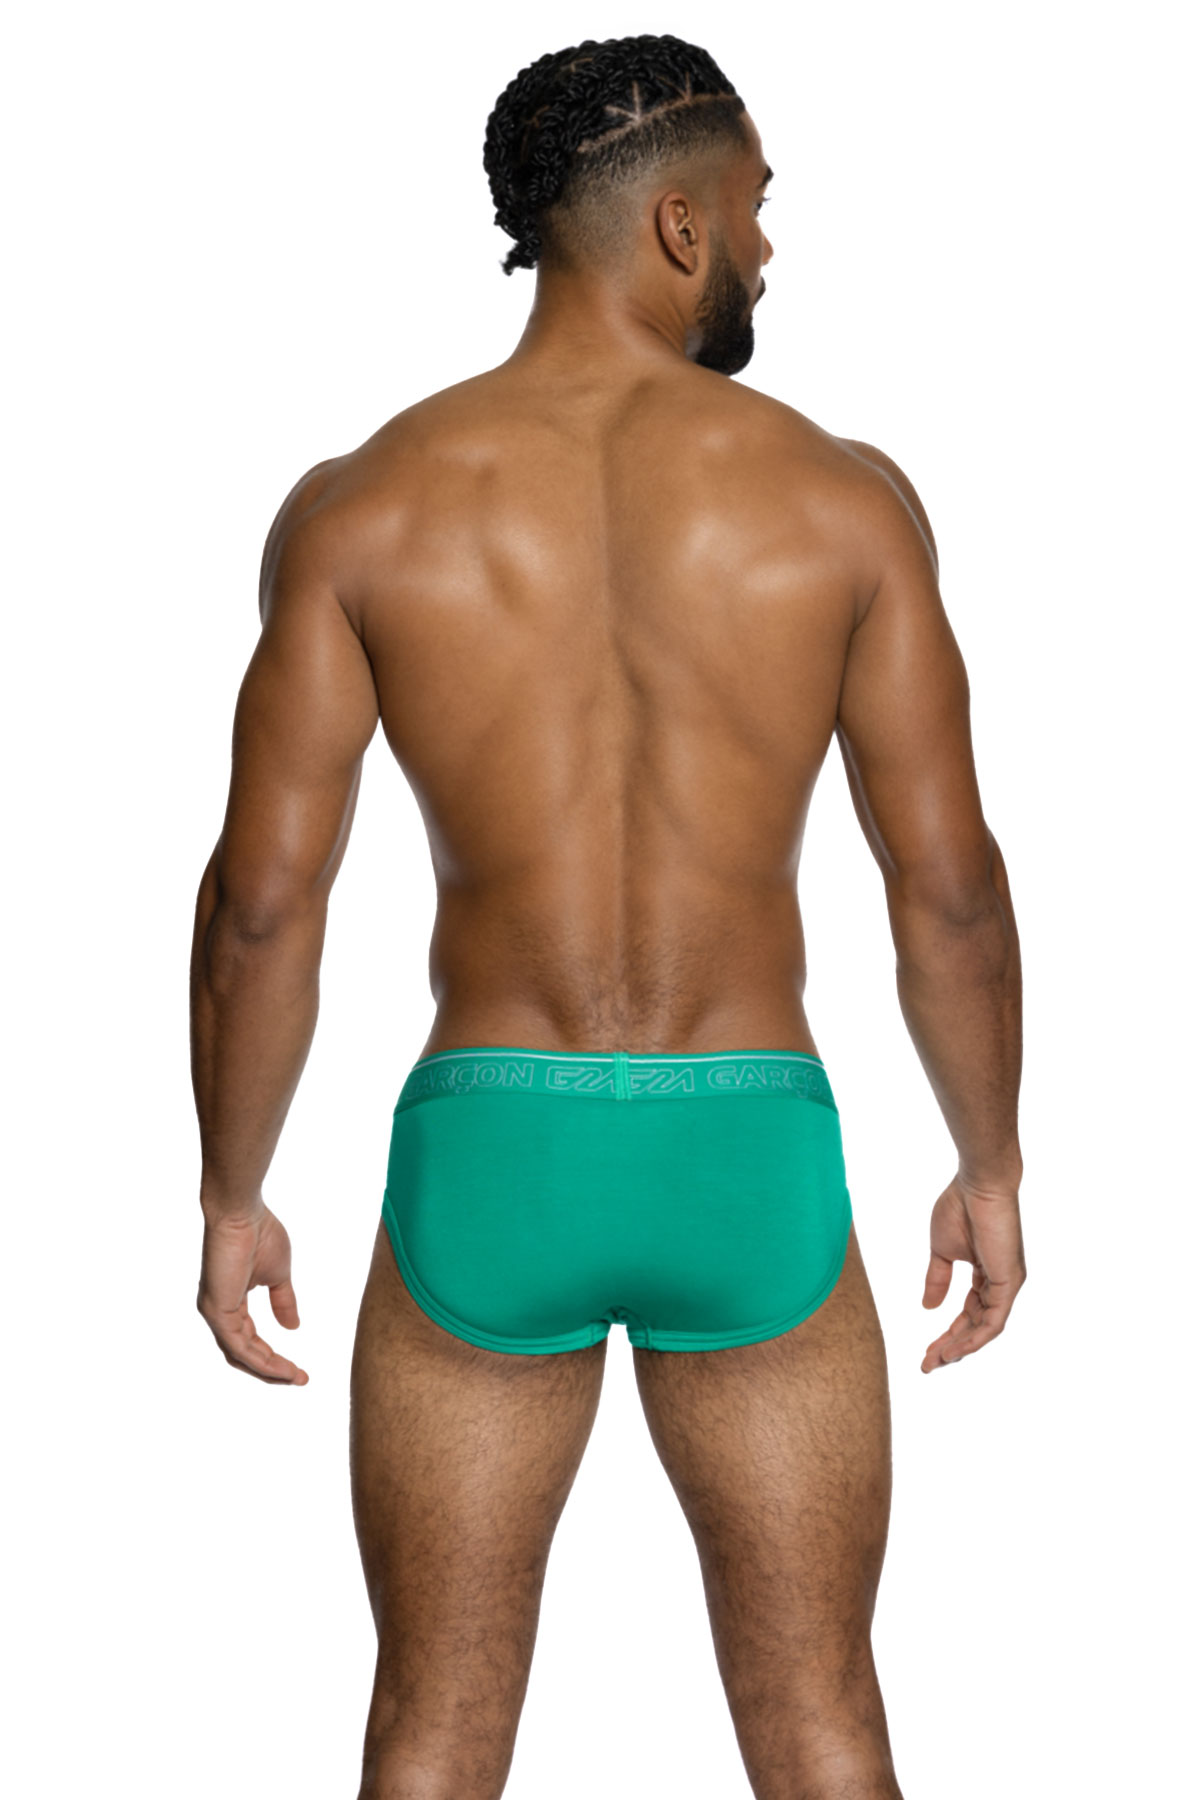 Green Underwear for Men